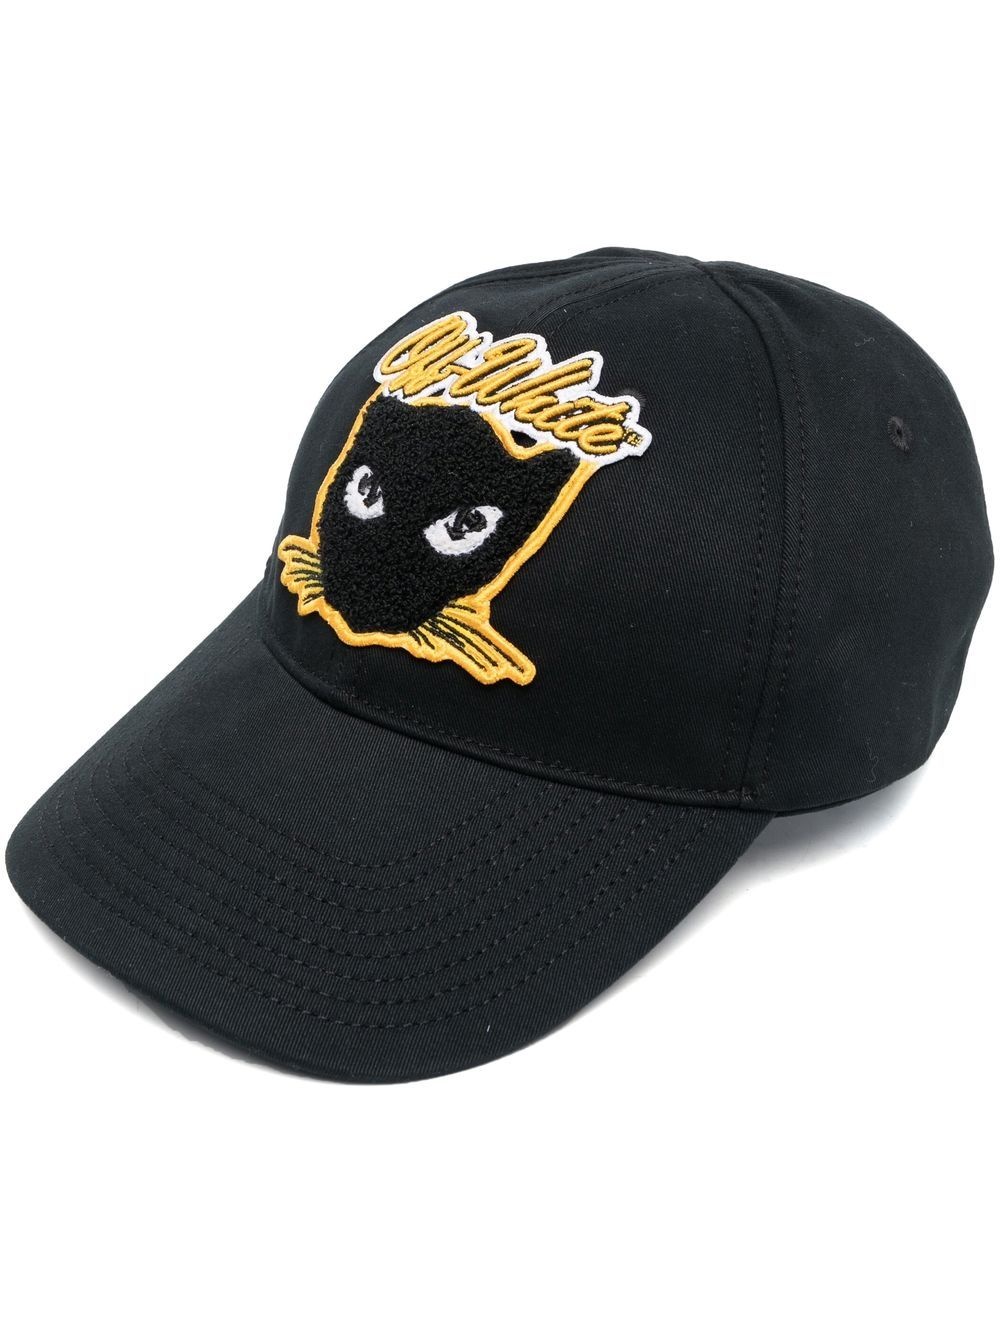 cat varsity baseball cap - 1